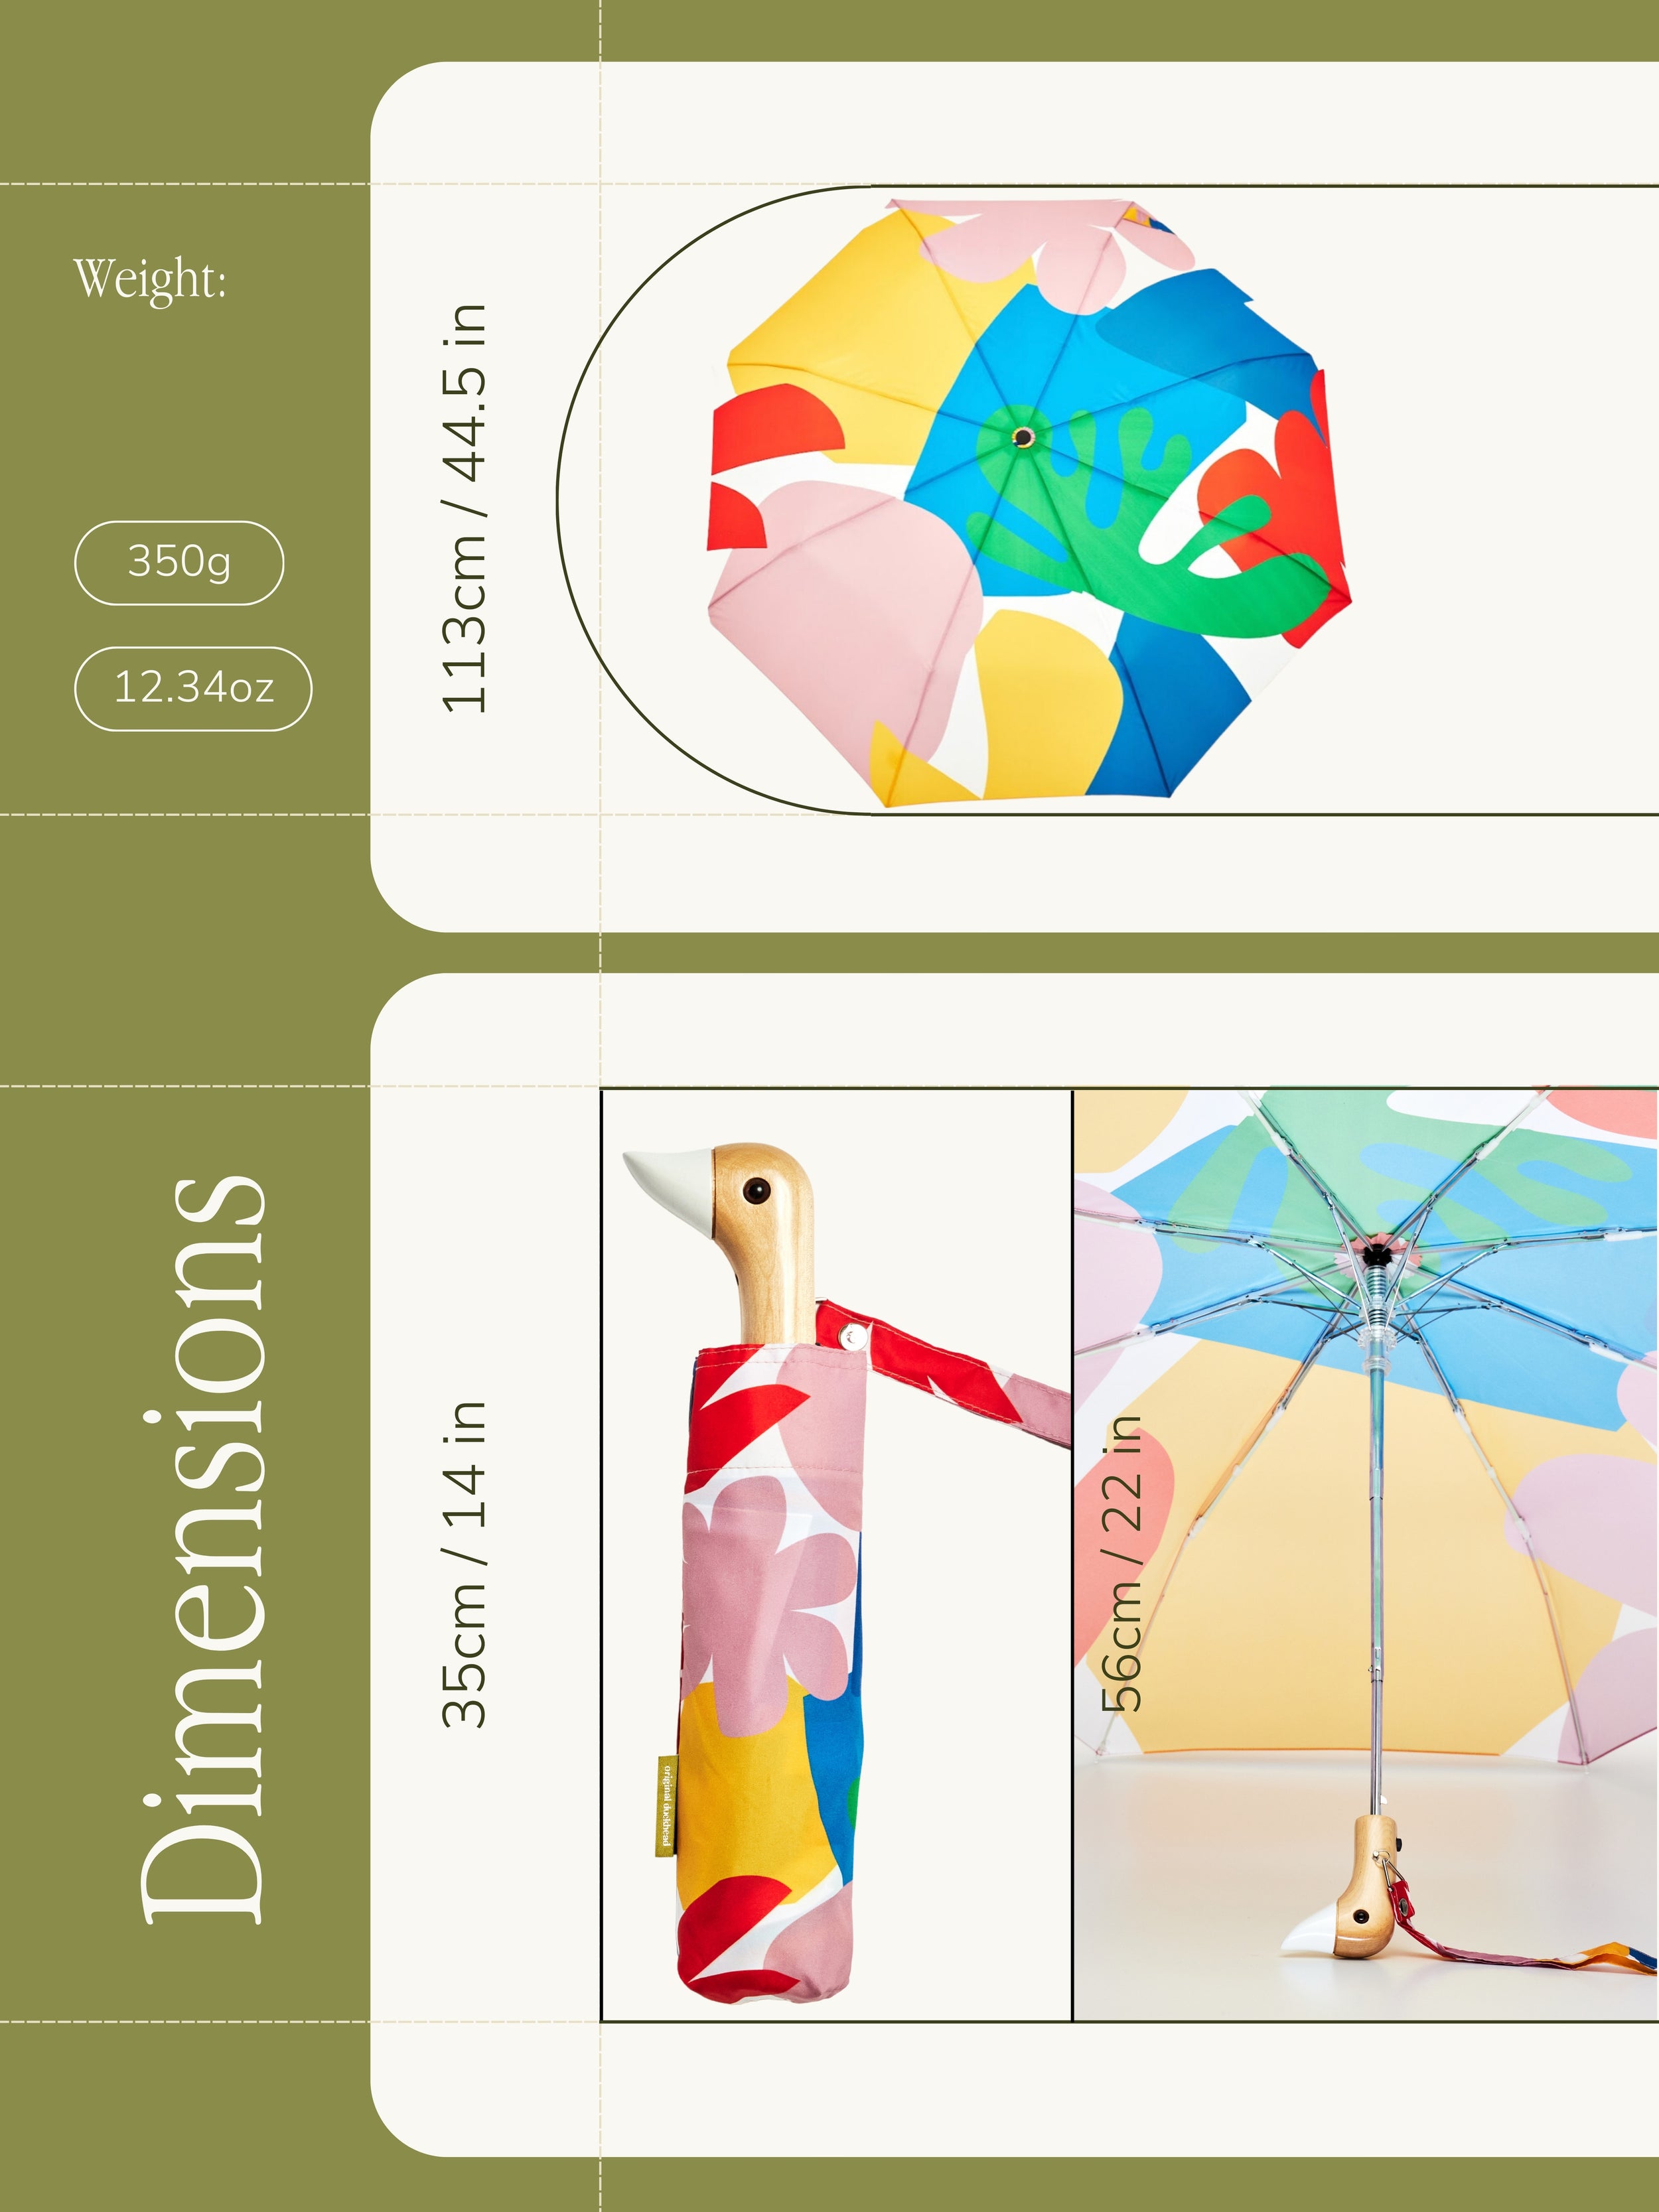 Matisse Print Eco-Friendly Umbrella.